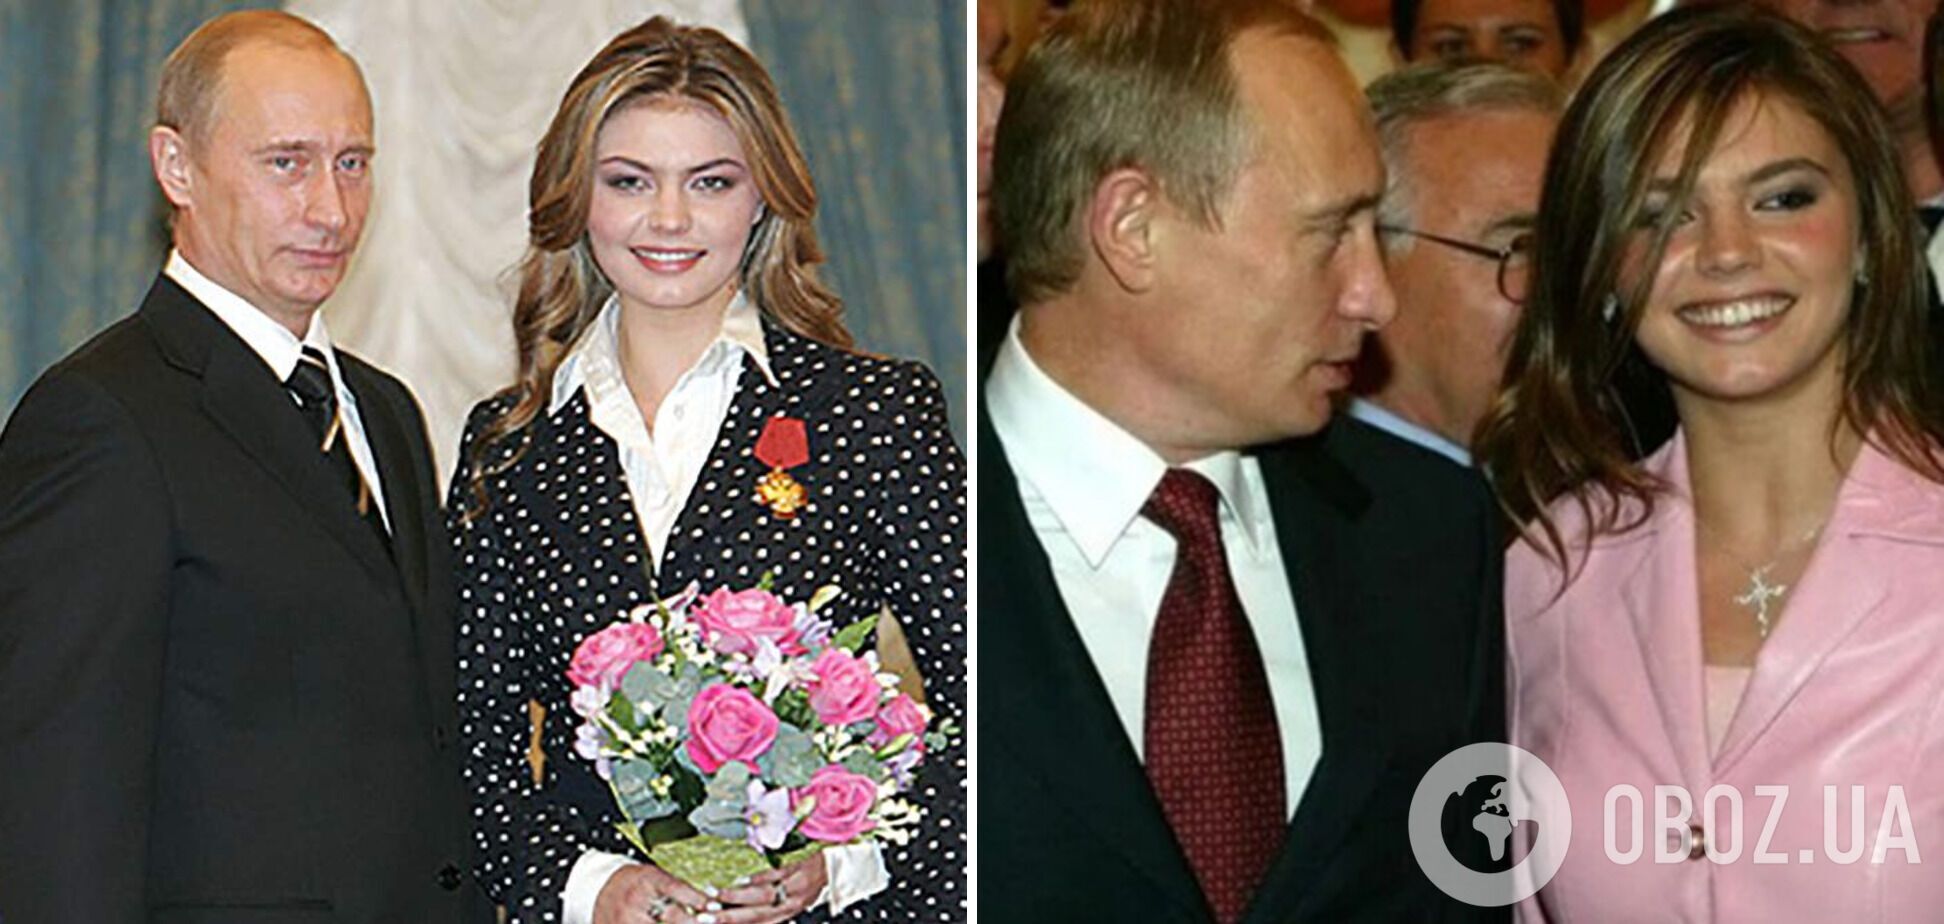 Припускають, що Путін прилетів в Сочі, щоб привітати Кабаєву з днем народження